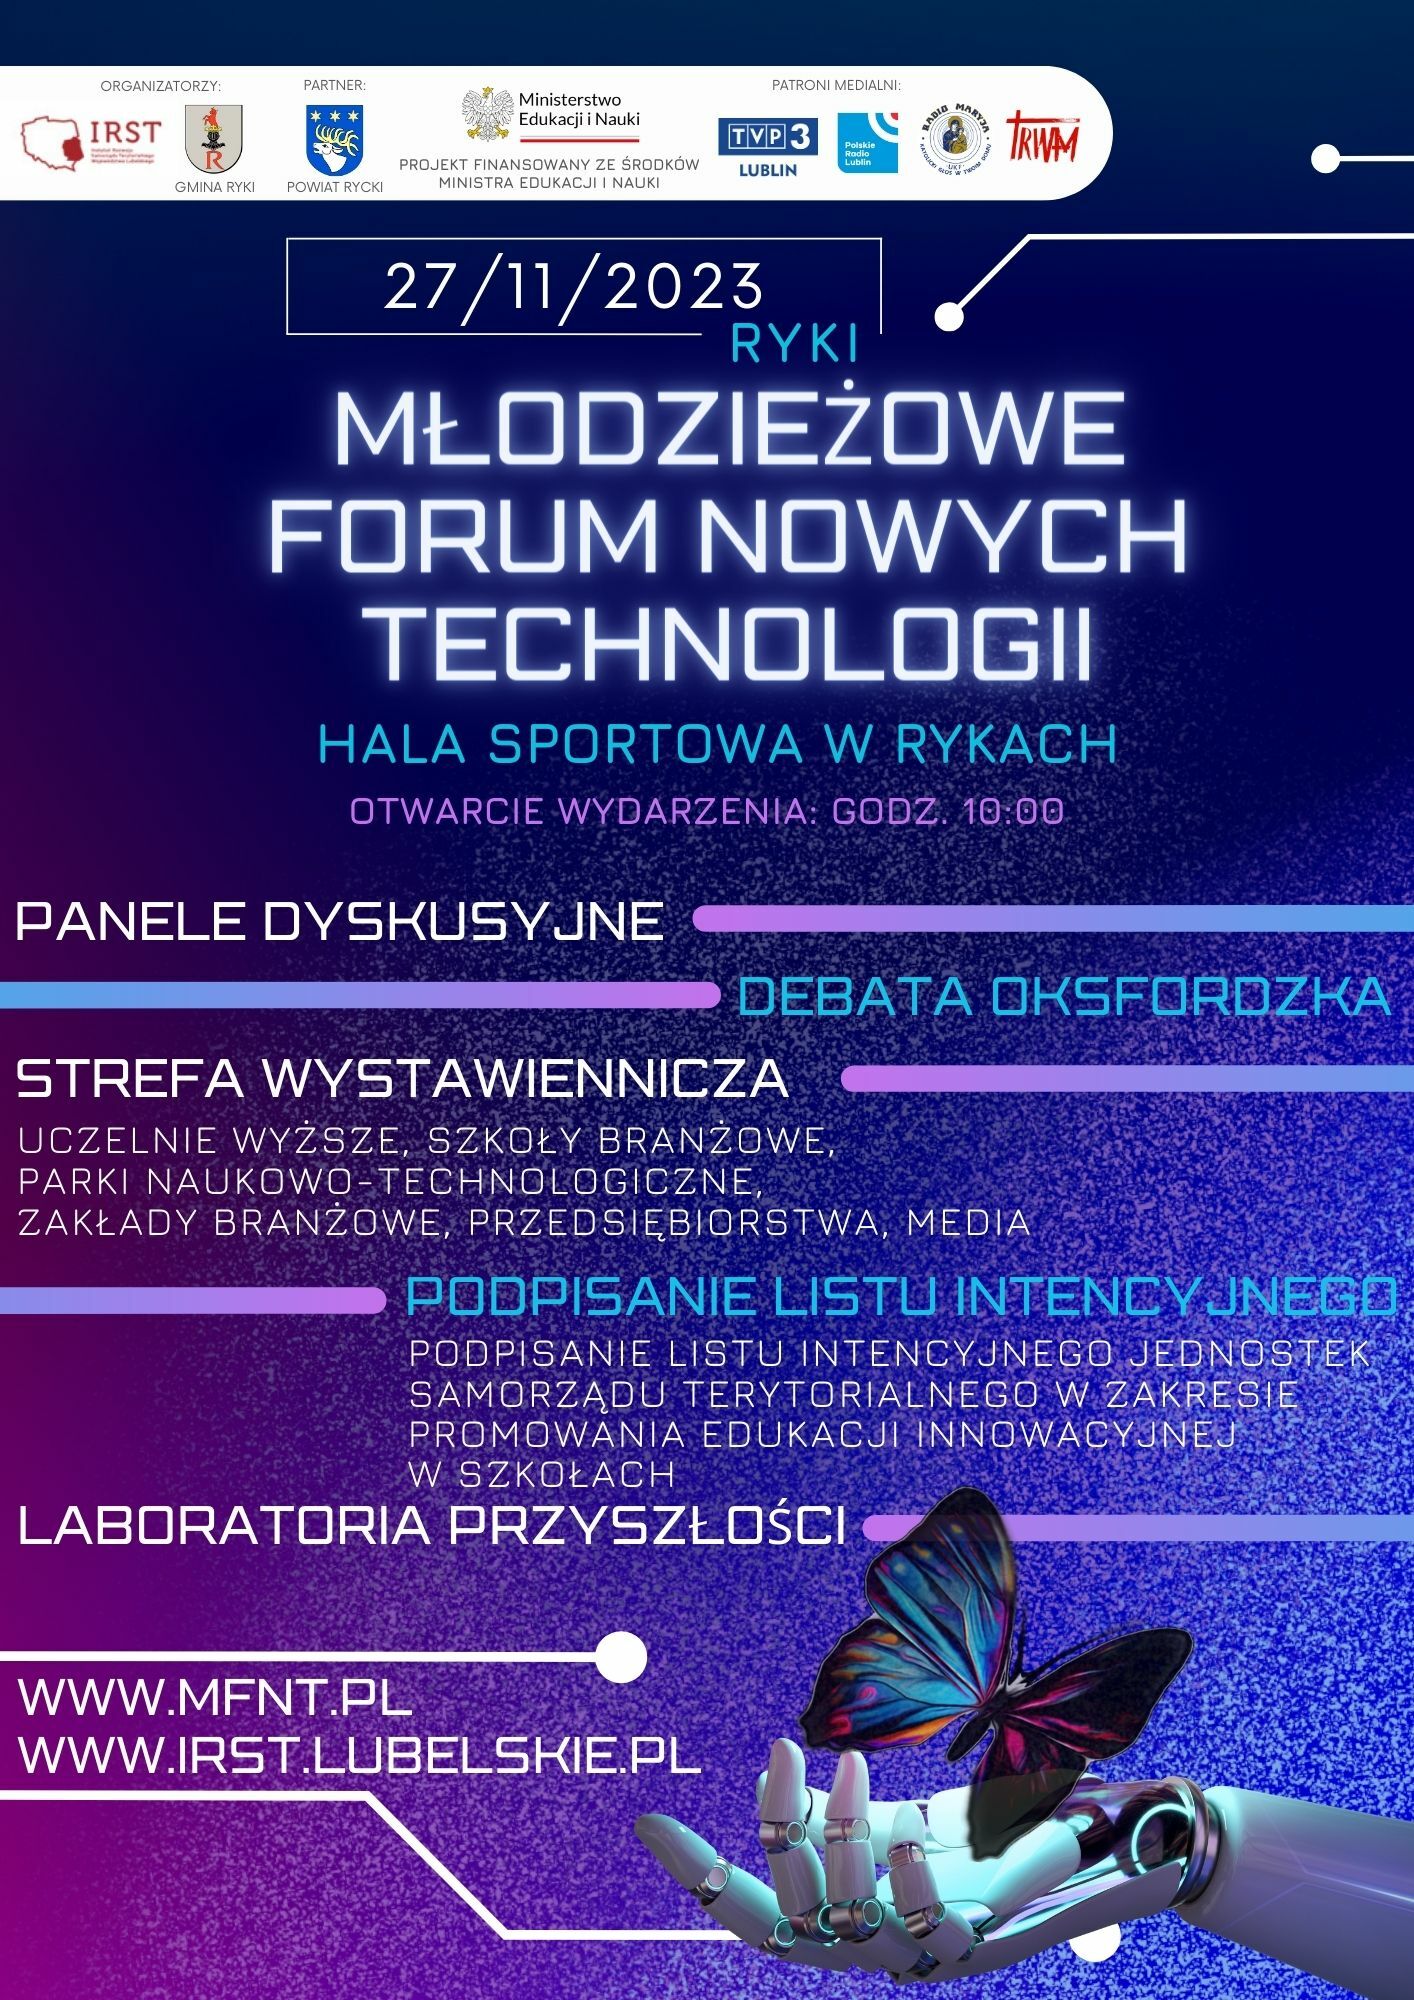 Plakat informacyjny o wydarzeniu "Młodzieżowe Forum Nowych Technologii" w hali sportowej w Rykach, z datą 27.11.2023 i różnymi panelami tematycznymi oraz linkiem do strony internetowej.